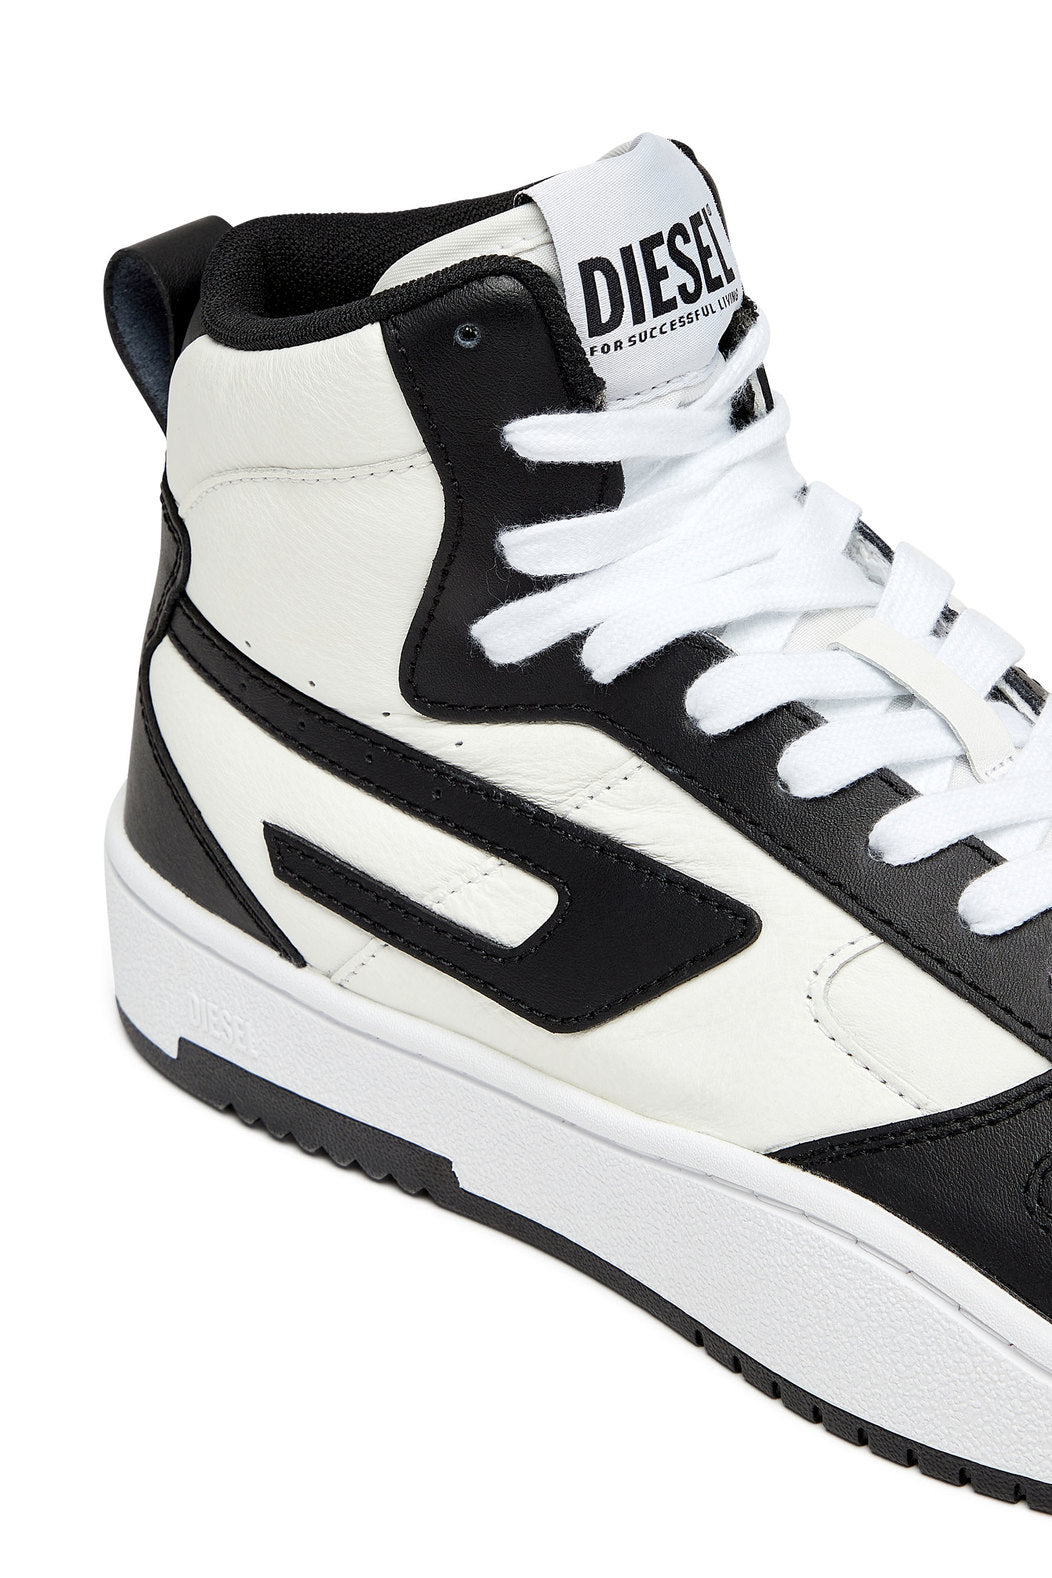 Diesel Y03205P5576 Mens S-Ukiyo V2 Mid Sneakers Black And White